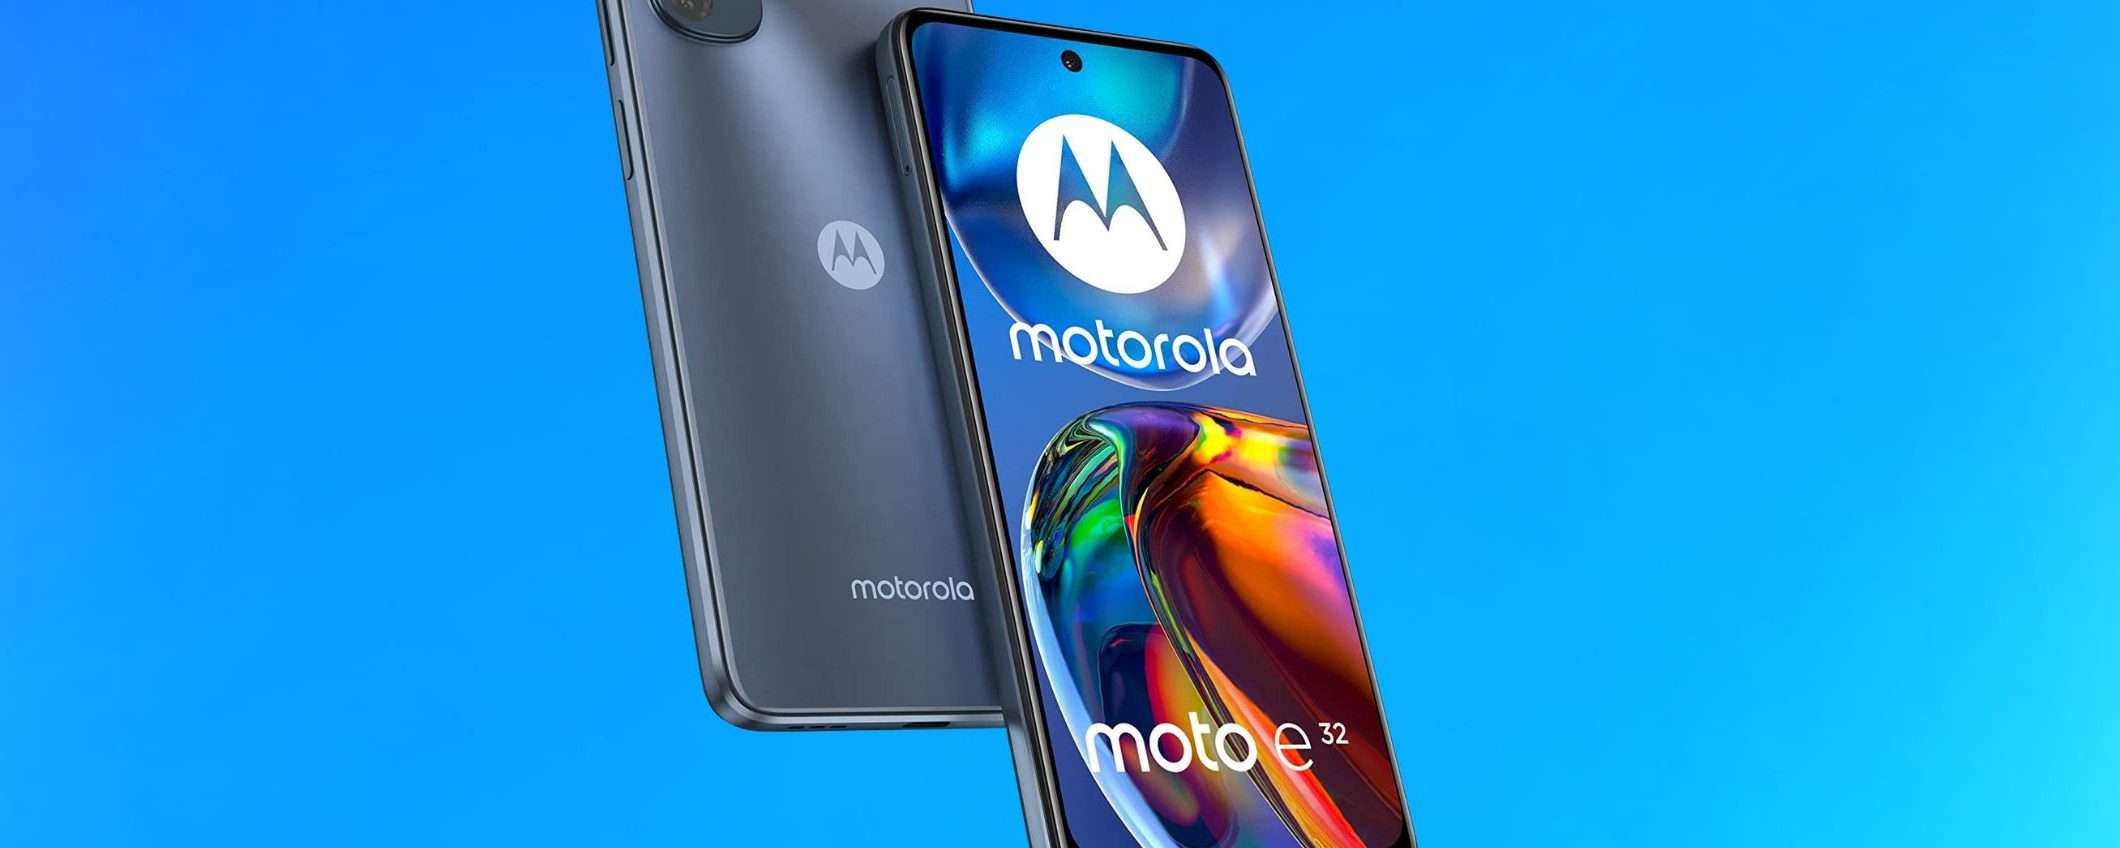 Motorola Moto e32: solo 129 euro con la nuova offerta Amazon